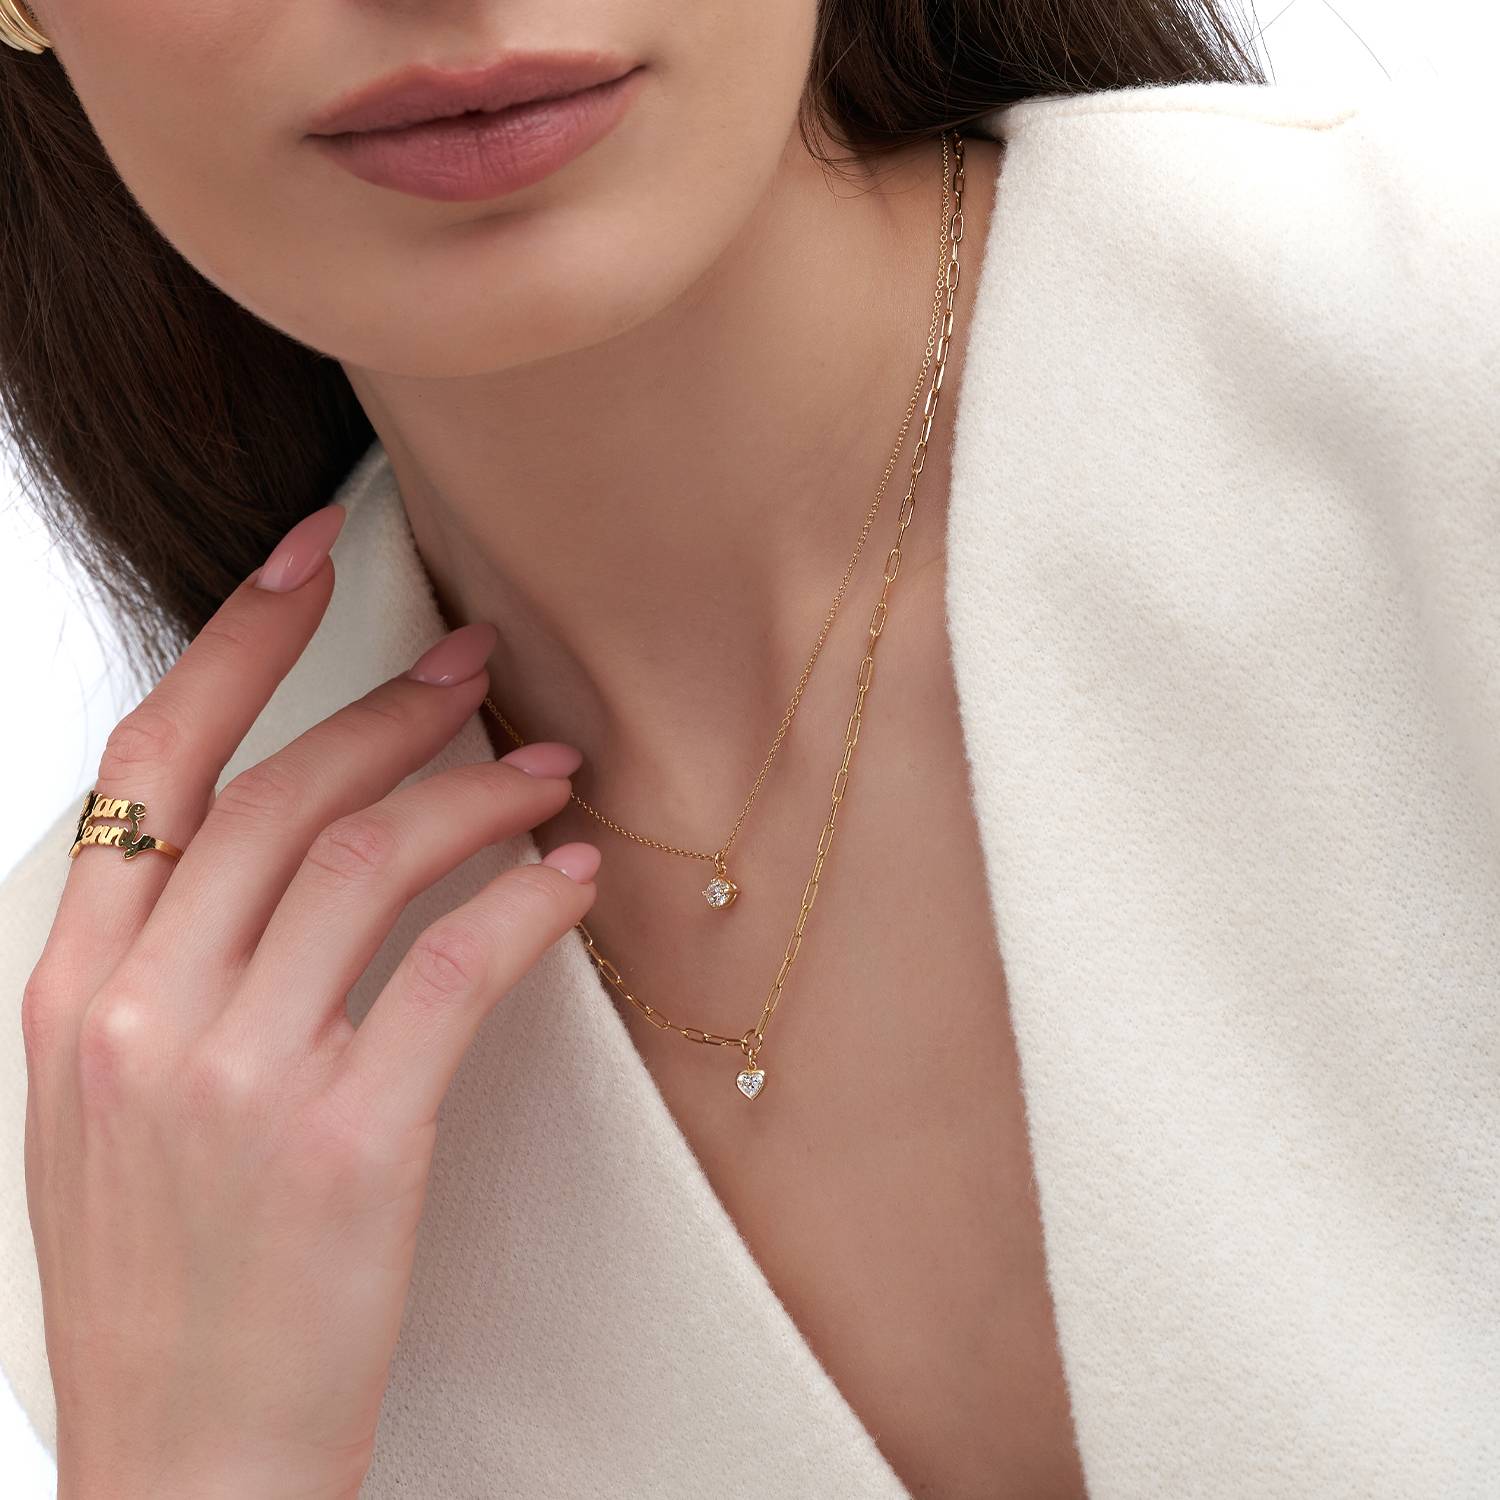 Te Amo 0.2 ct Heart Shape Diamond Necklace - Gold Vermeil-4 product photo